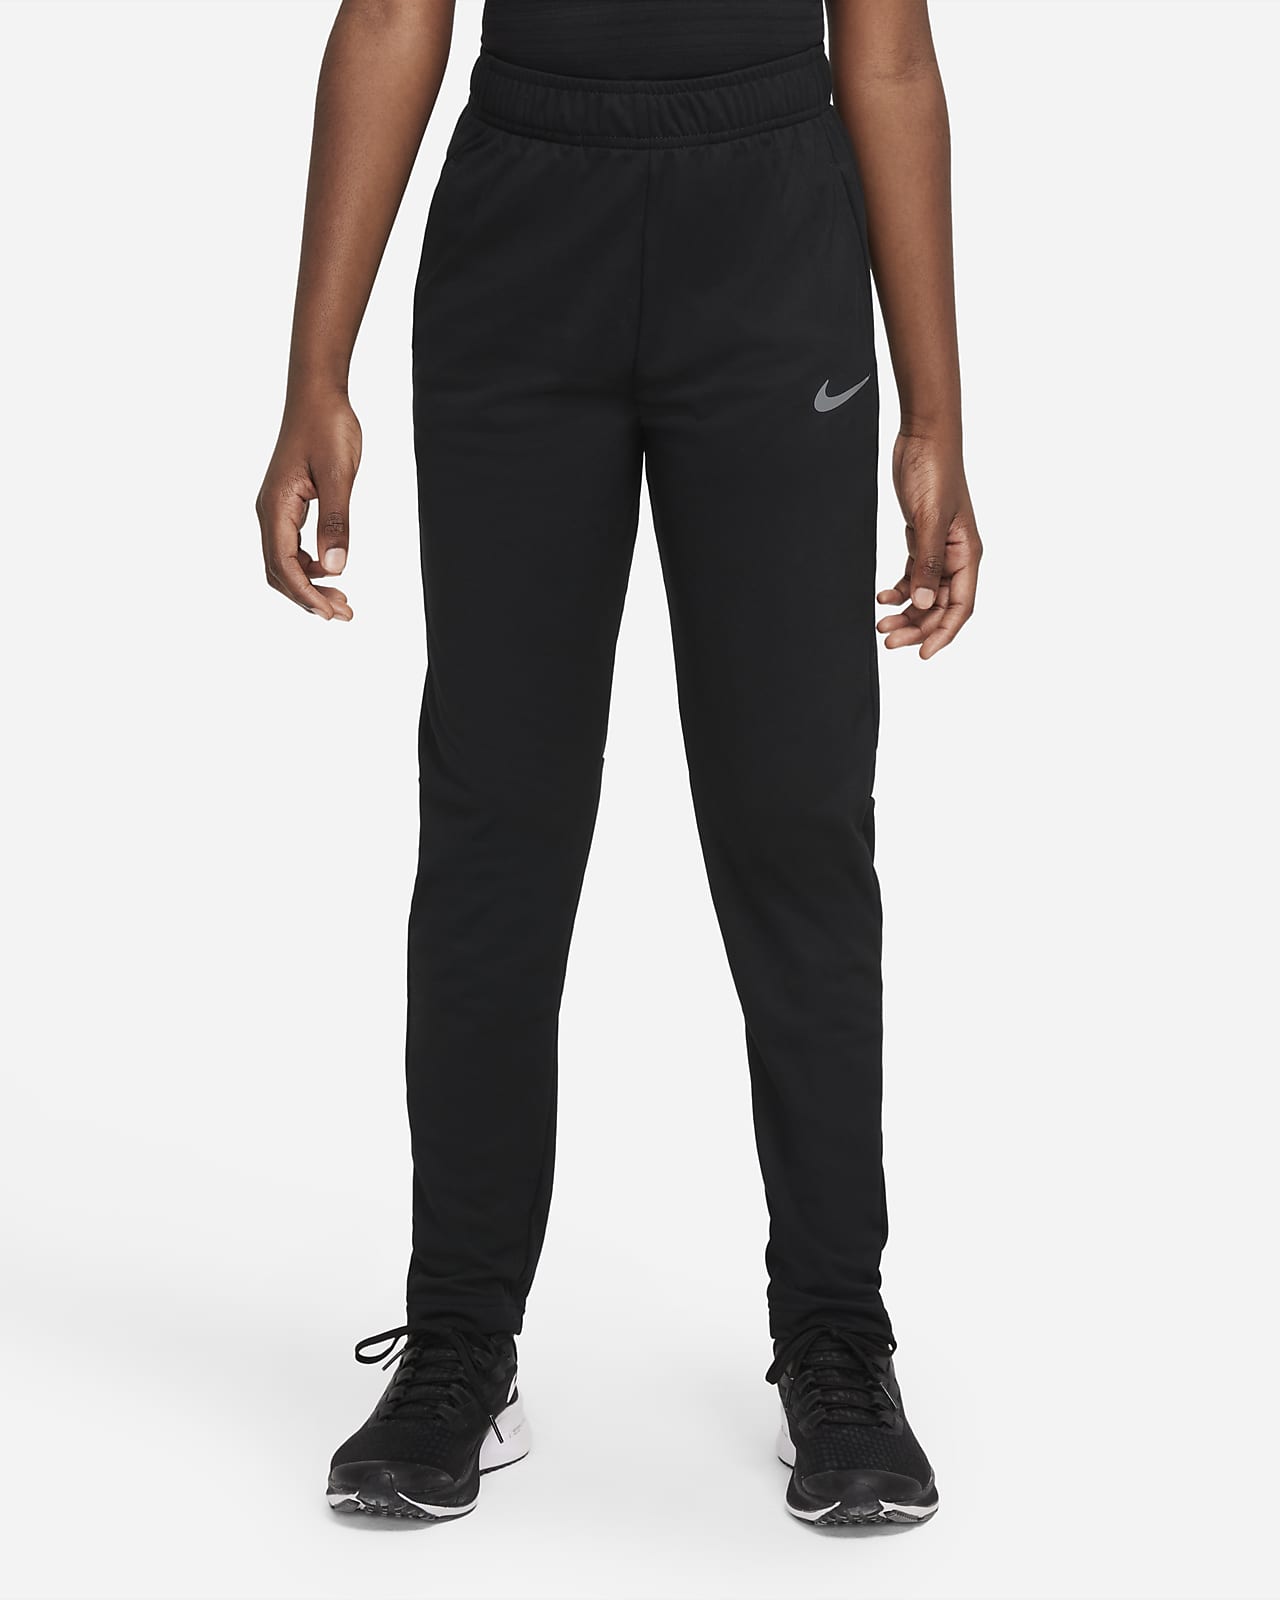 auteur punch bang Spodnie treningowe dla dużych dzieci (chłopców) Nike Poly+. Nike PL